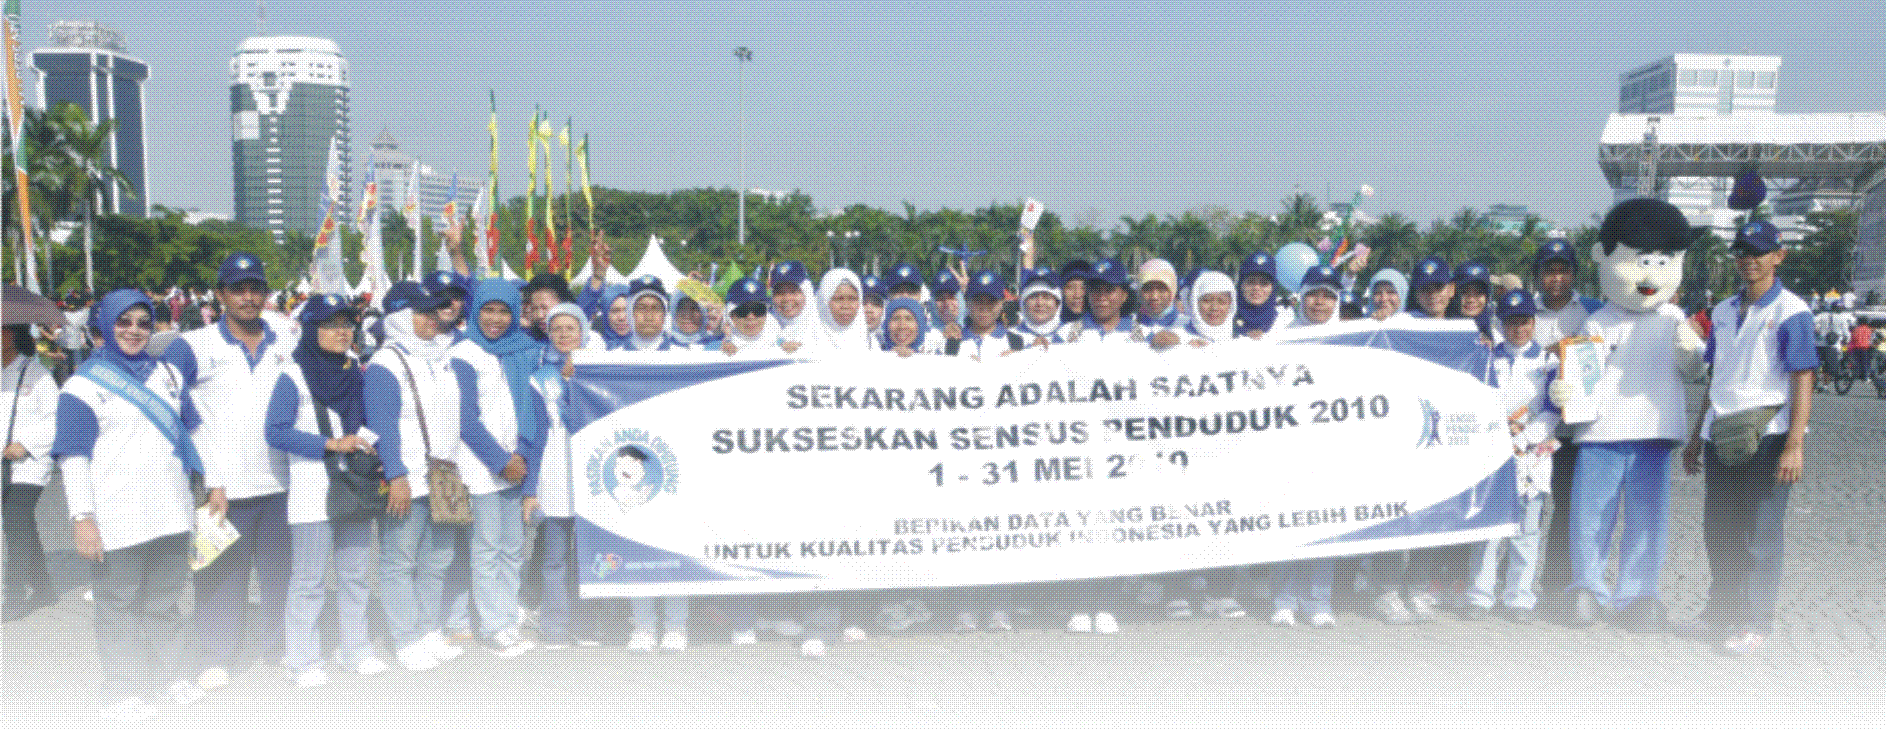 Dharma Wanita Persatuan BPS: Totalitas dalam Kampanye SP2010 (Indonesian Version)